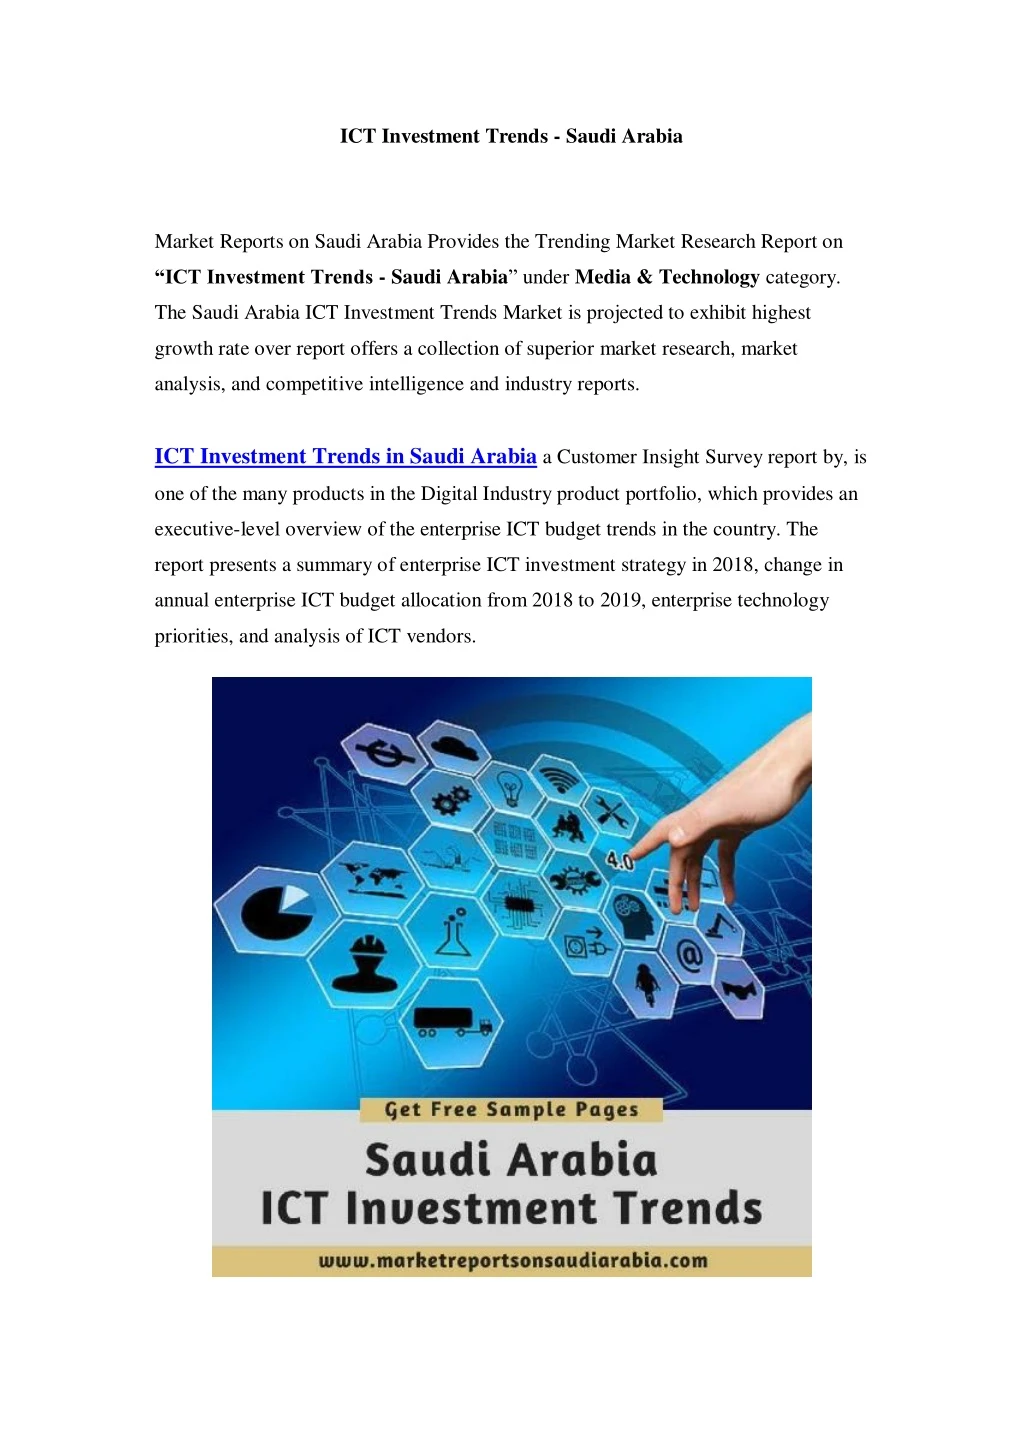 ict investment trends saudi arabia